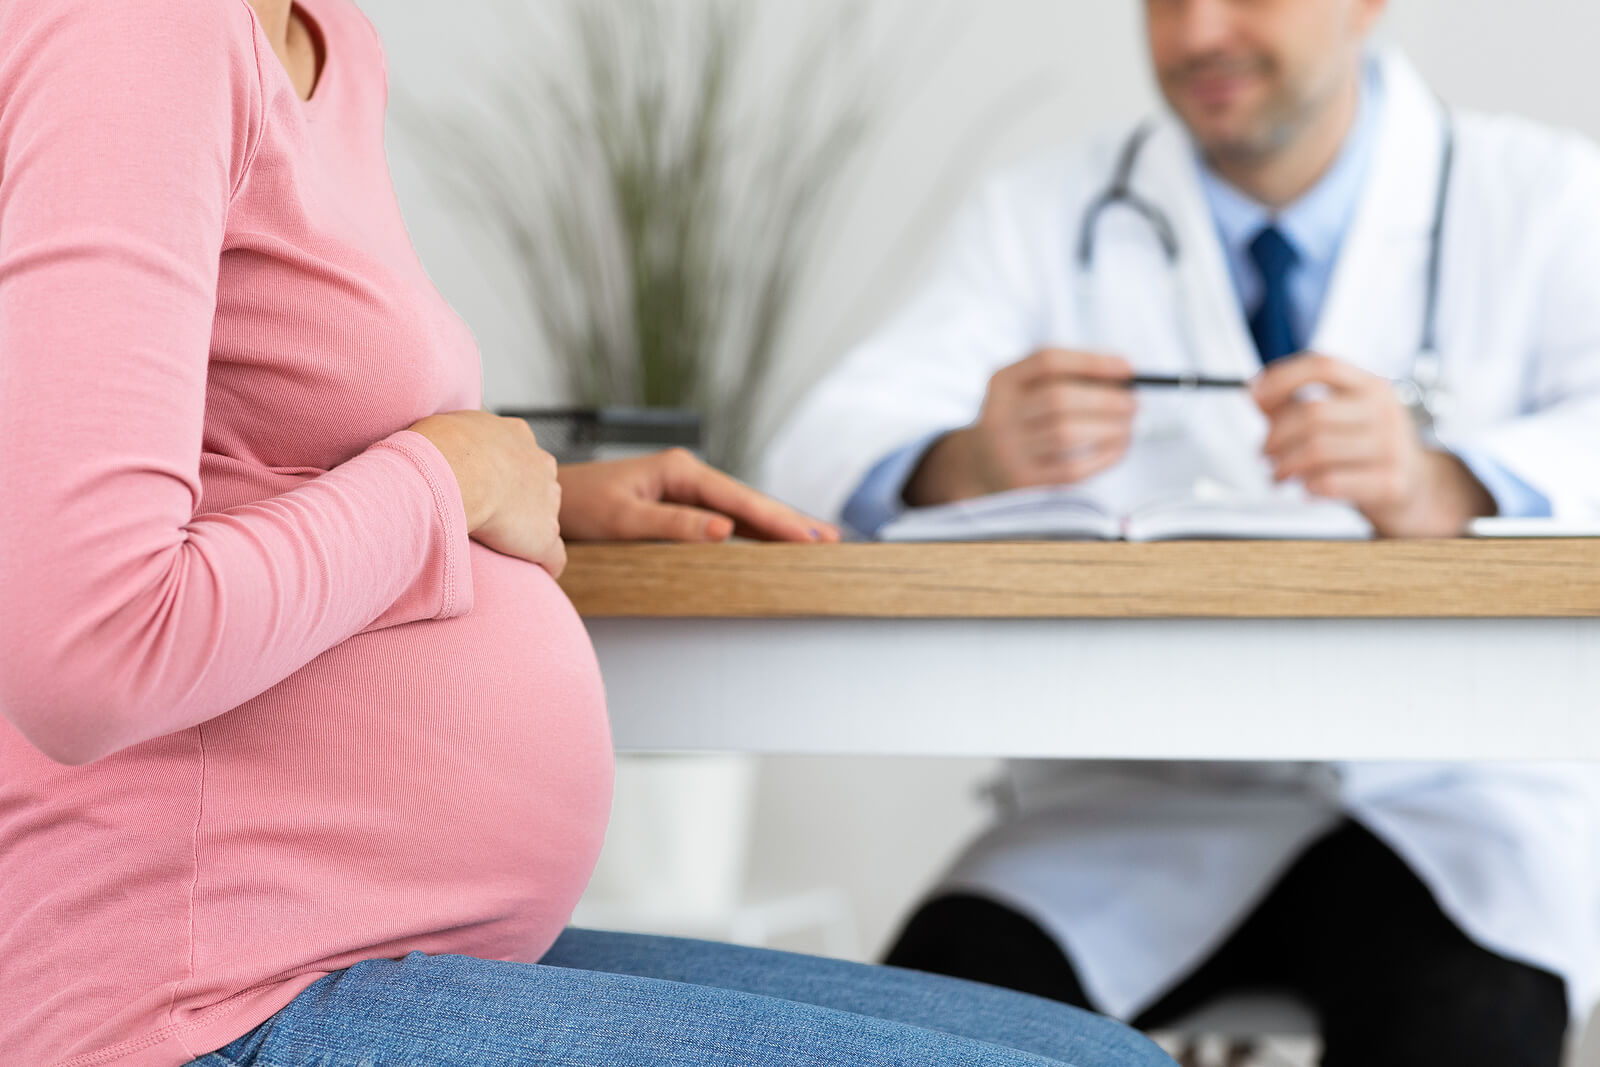 Os exames médicos e análises durante a gravidez incluem testes especiais